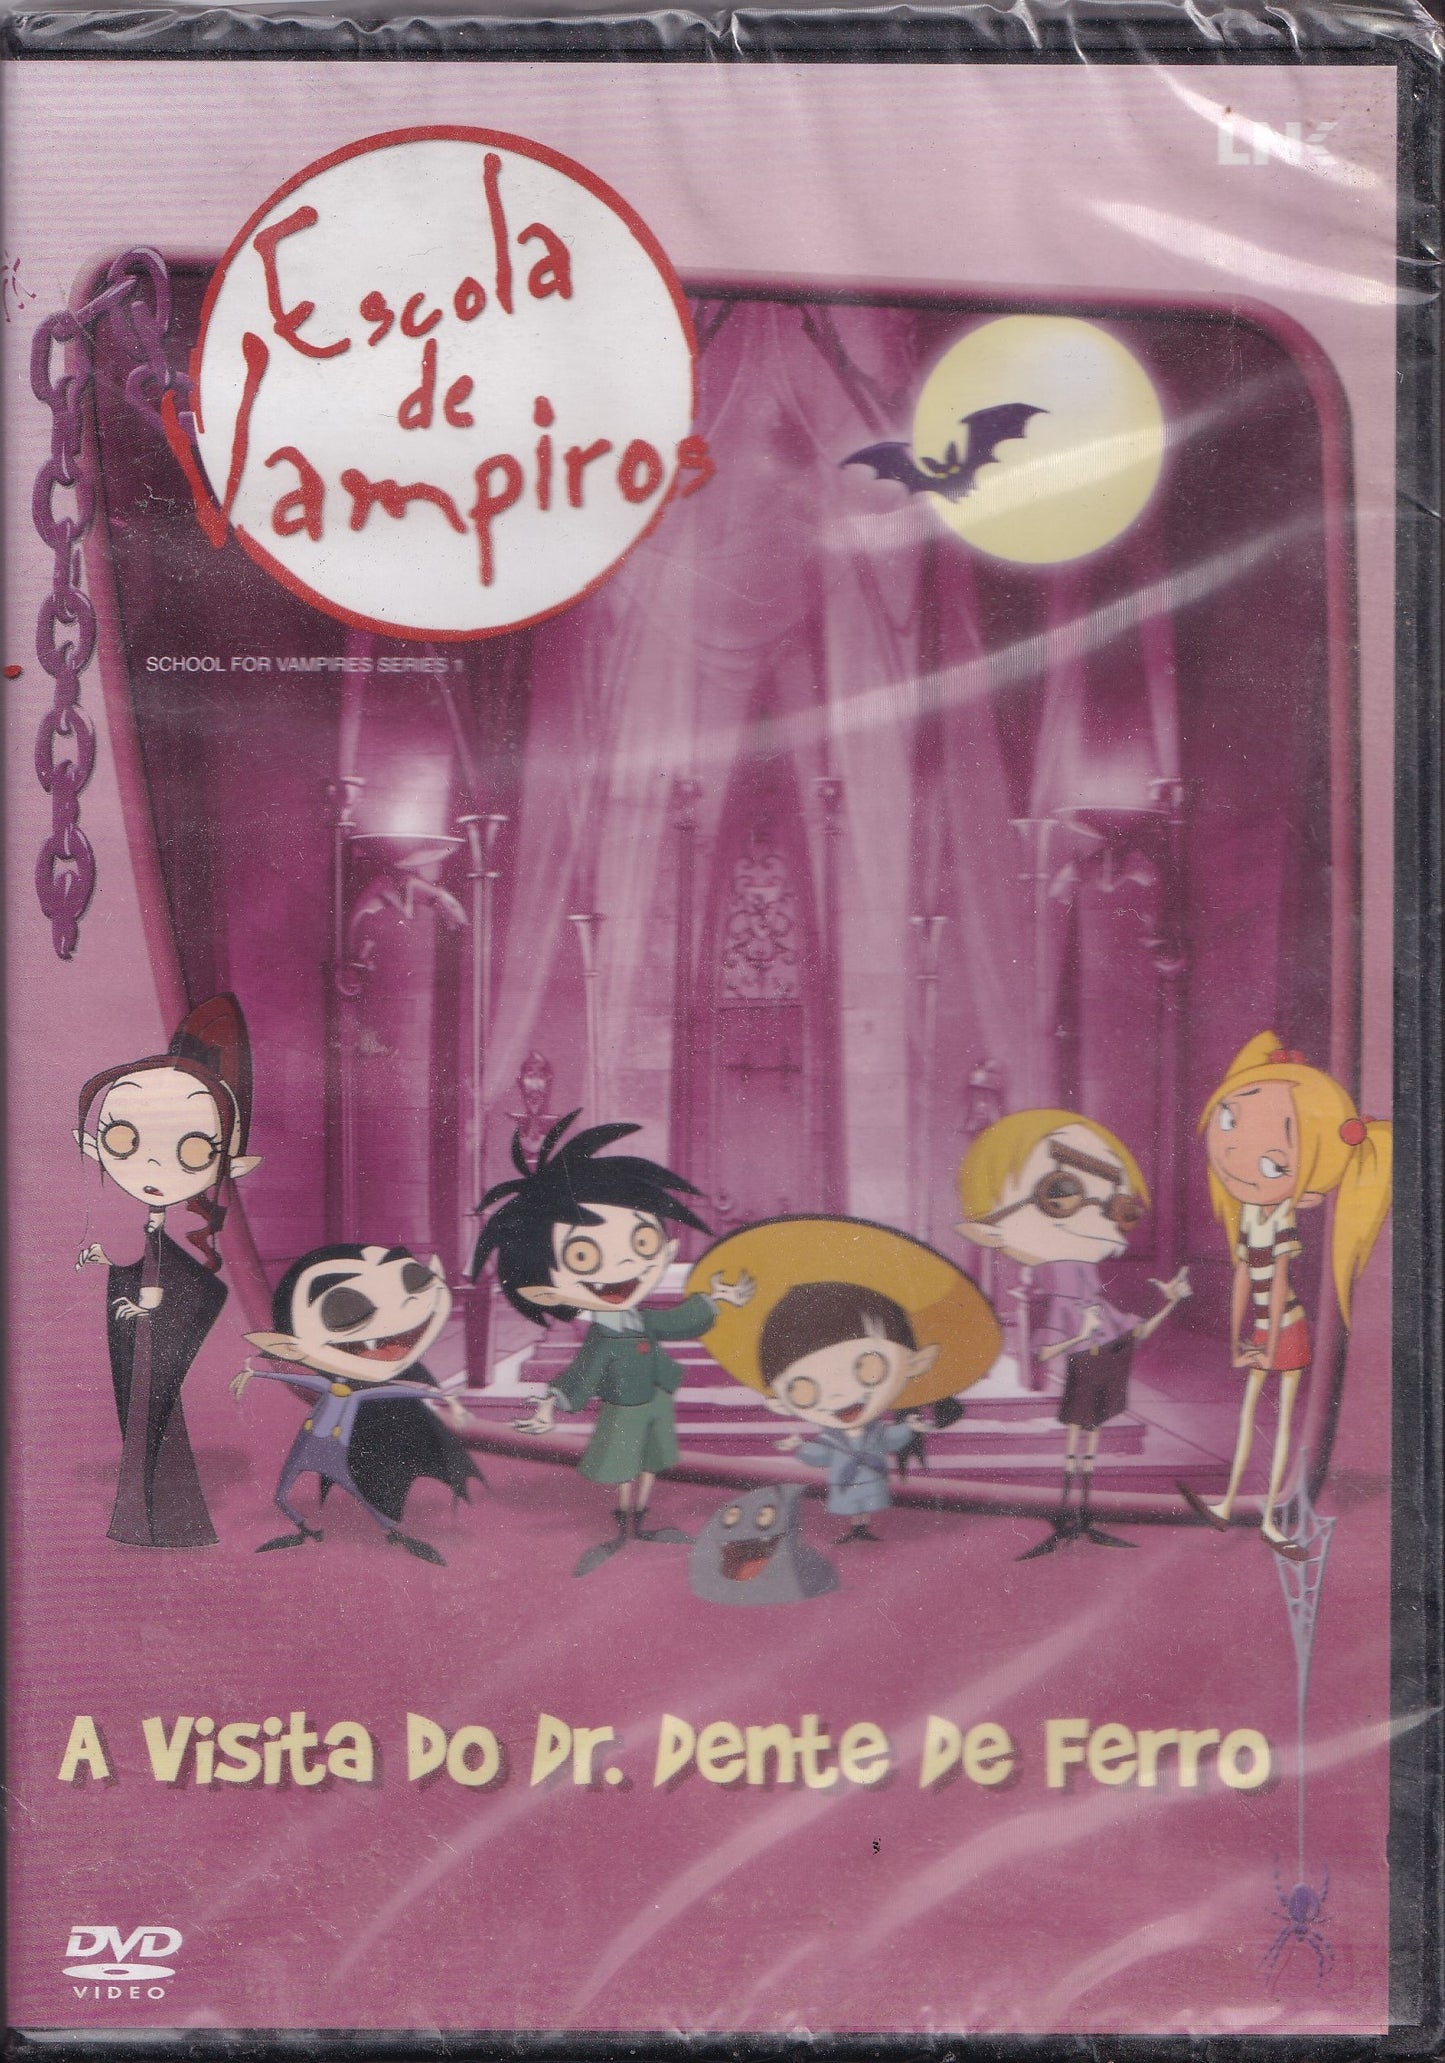 DVD ESCOLA DE VAMPIROS A VISITA DO DR. DENTE DE FERRO VL 1  - NOVO